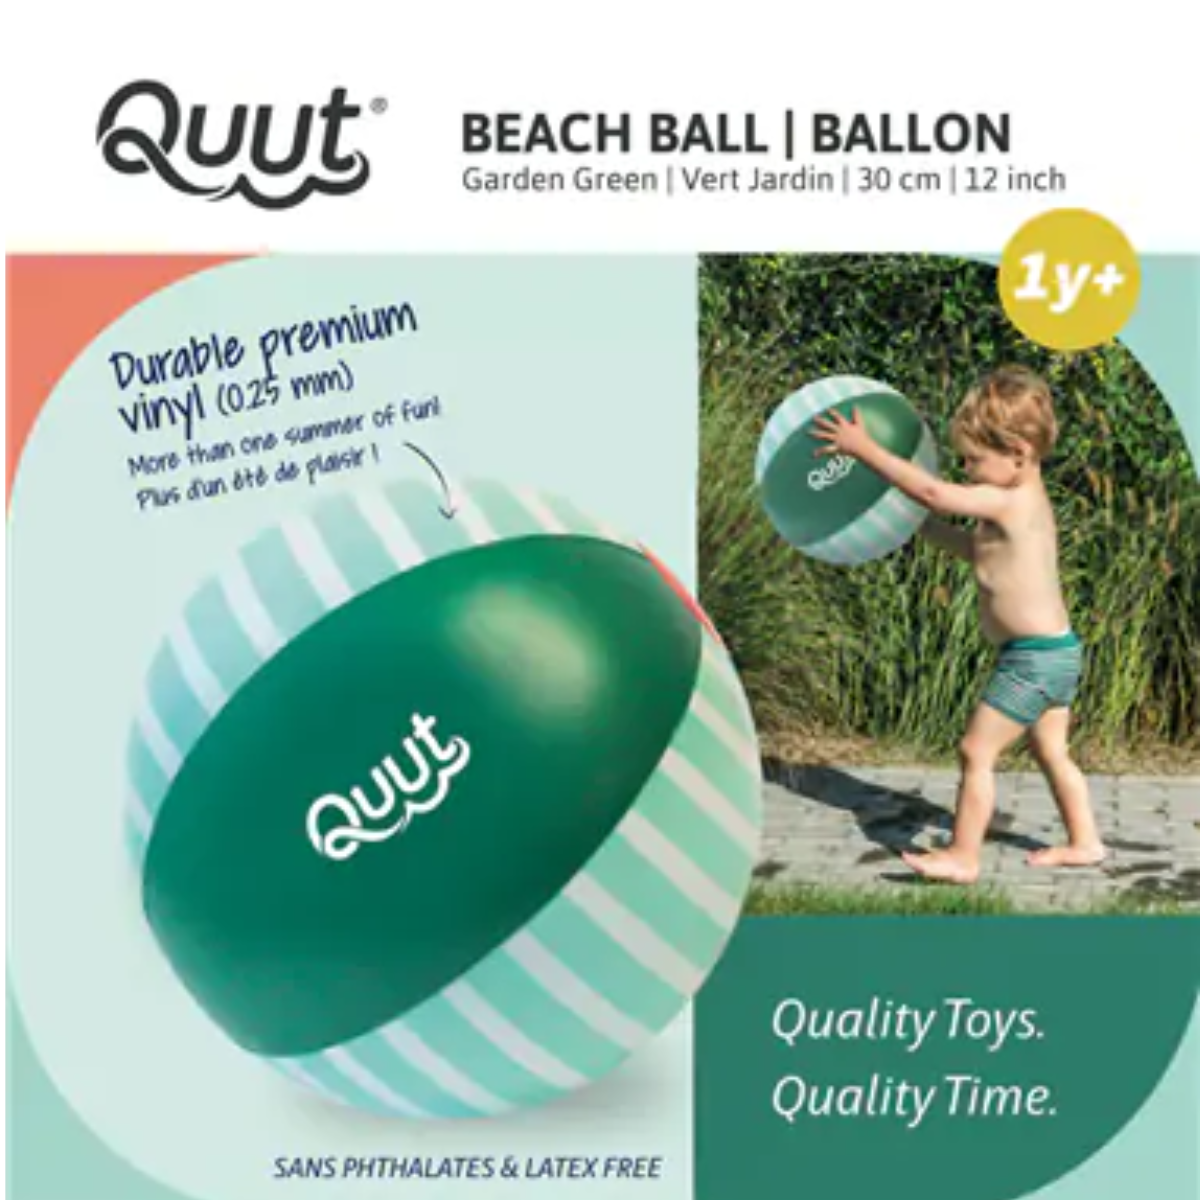 Quut – Ballon de plage 30cm vert jardin